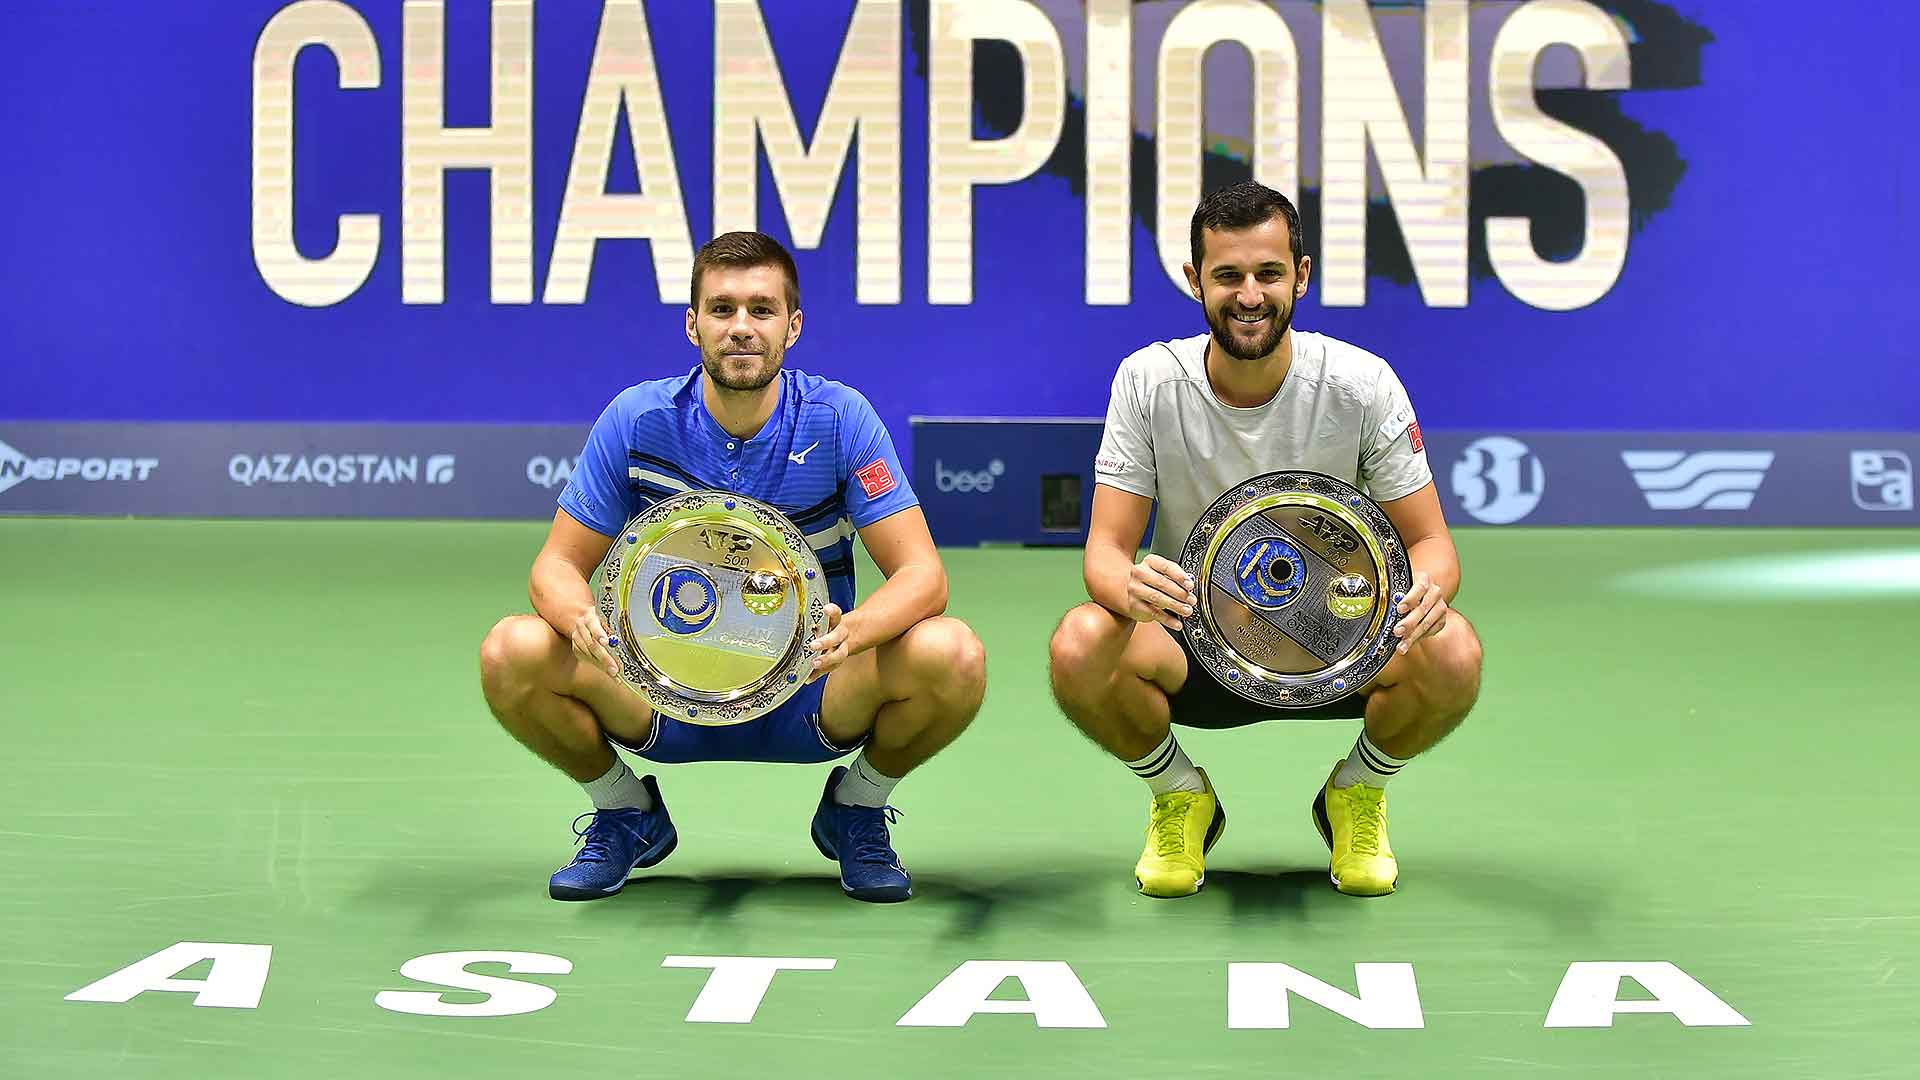 Nikola Mektic and Mate Pavic Clinch Astana Crown ATP Tour Tennis